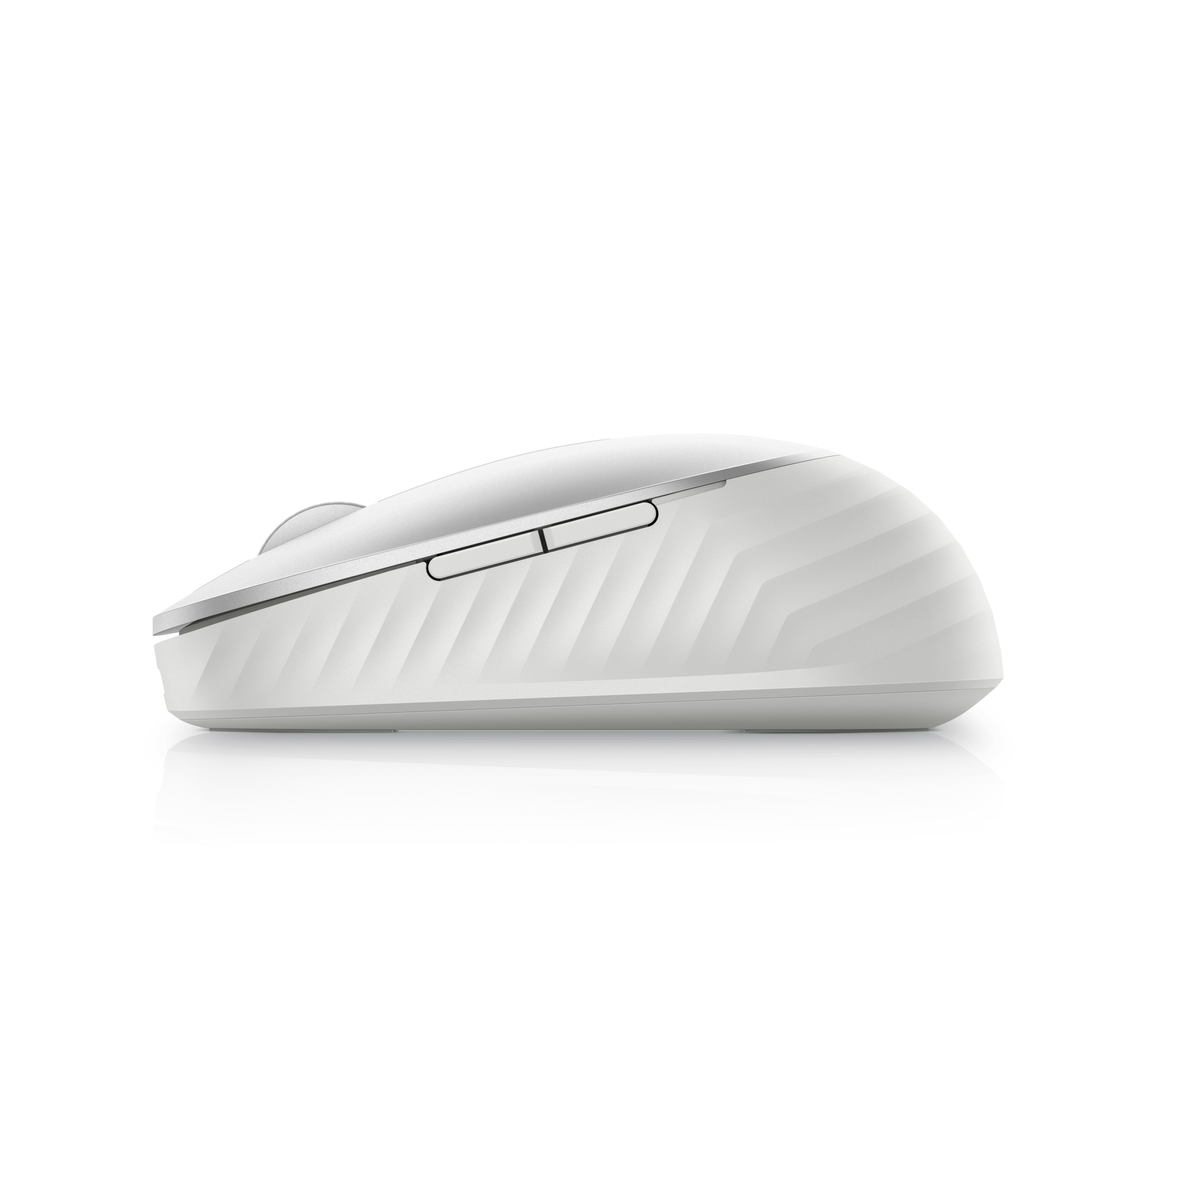 Maus, DELL 7 1.600 Weiß optische MS7421W USB, (kabellos, Tasten, dpi) silber Maus Bluetooth, Premier beidhändig,